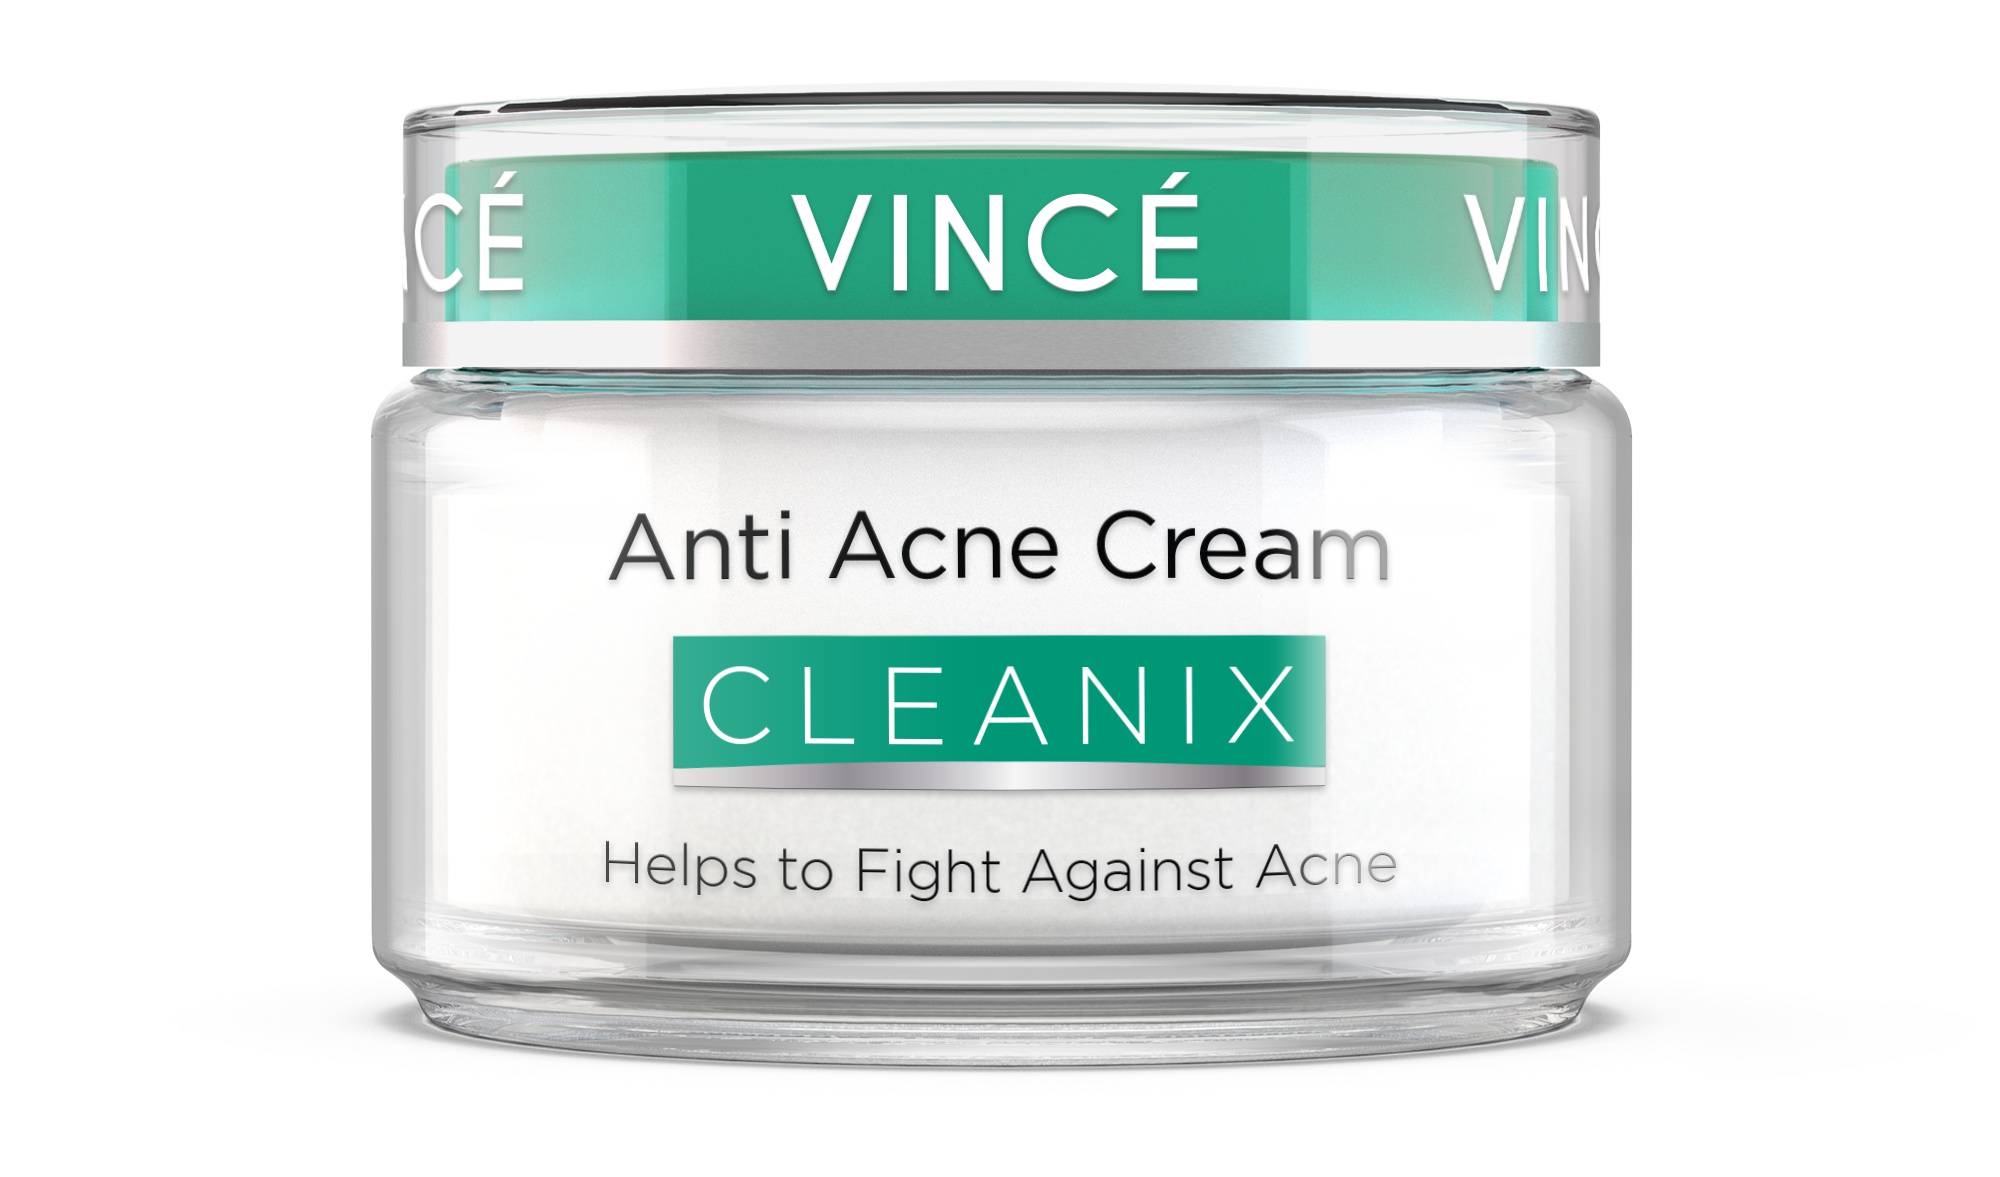 Vincé Anti Acne Cream